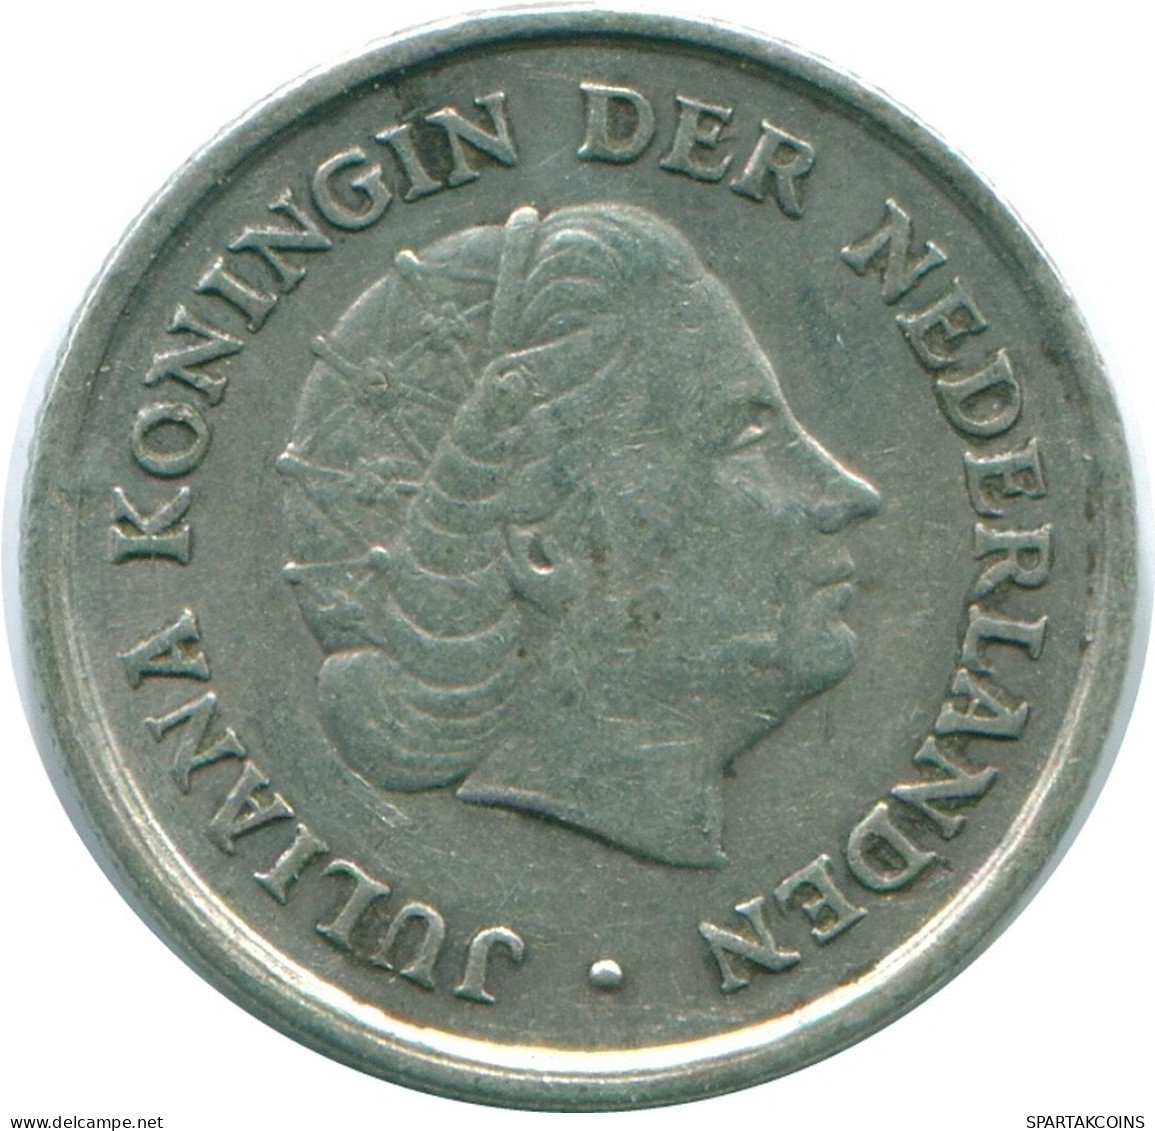 1/10 GULDEN 1966 NIEDERLÄNDISCHE ANTILLEN SILBER Koloniale Münze #NL12827.3.D.A - Antille Olandesi